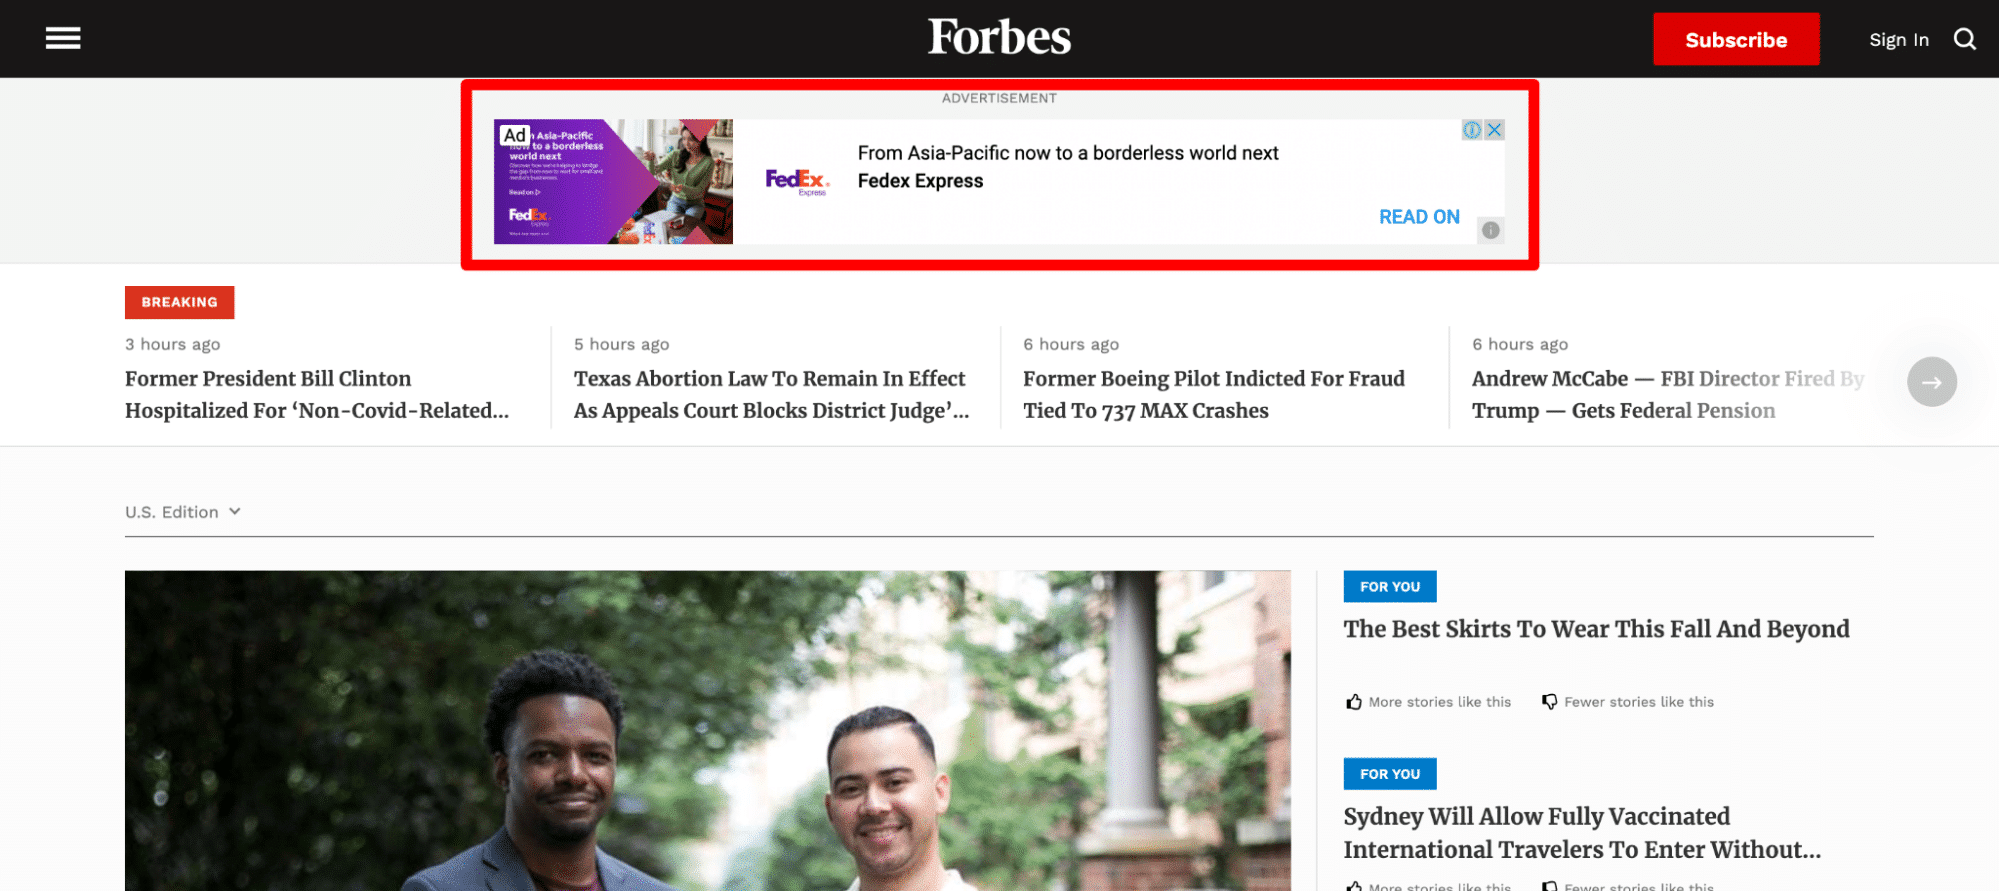 Anzeigen auf der Forbes-Homepage.